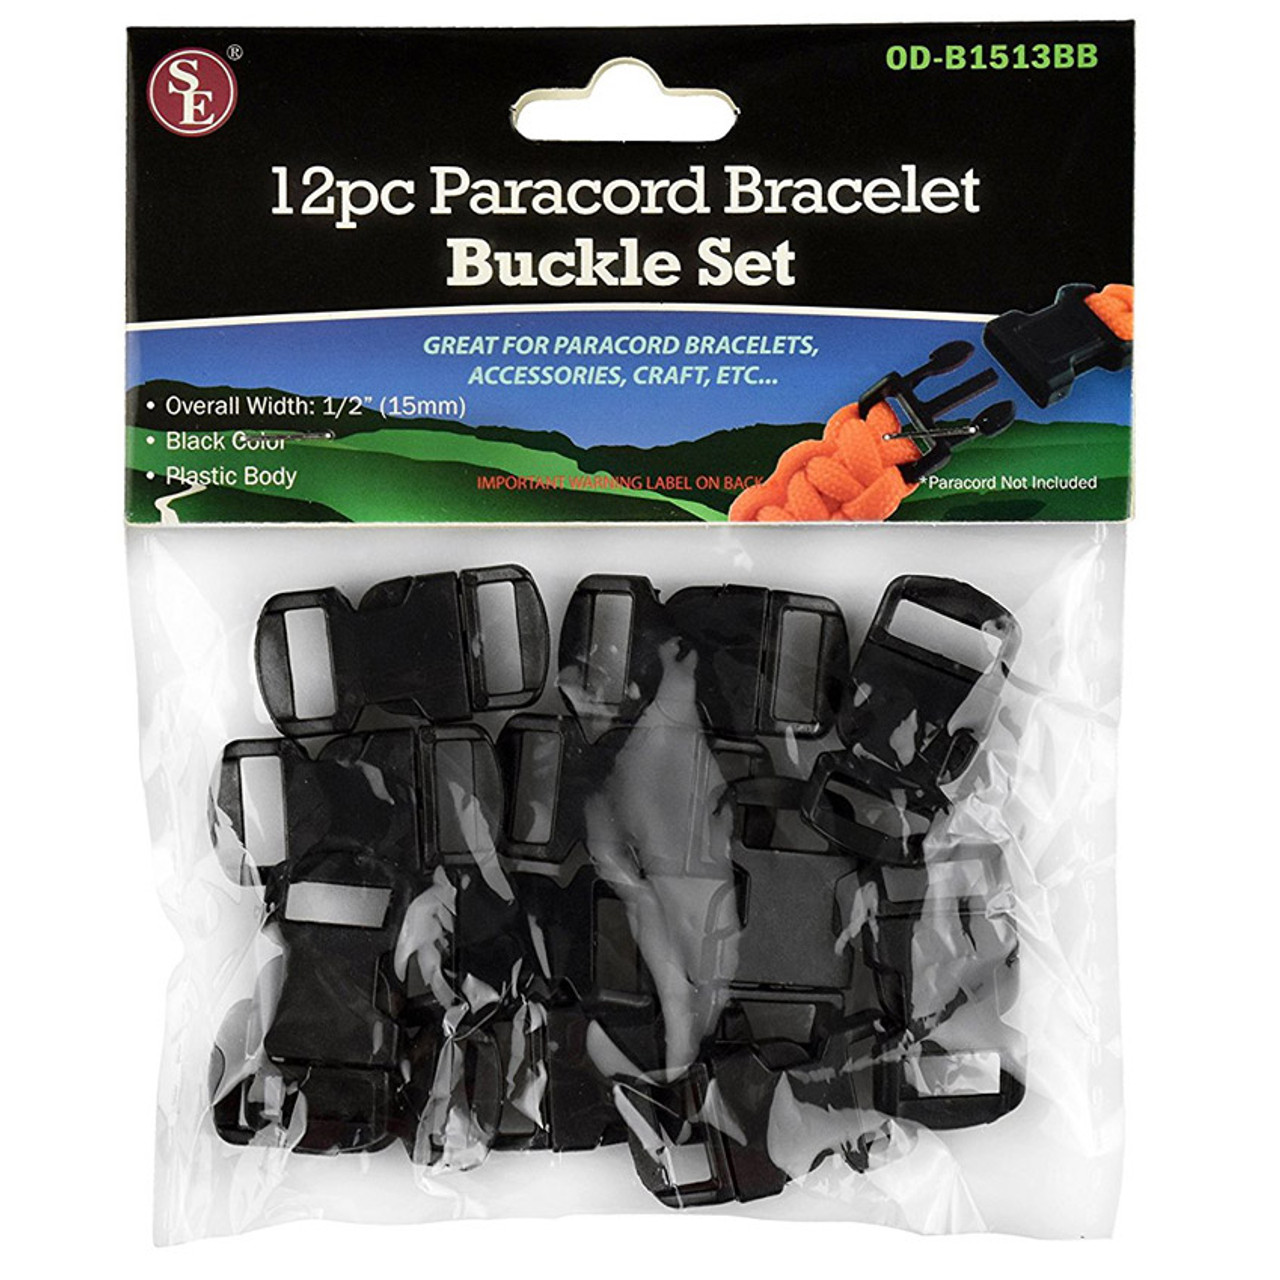 12 Piece Paracord Bracelet Buckle Set - 1/2 Size - Black